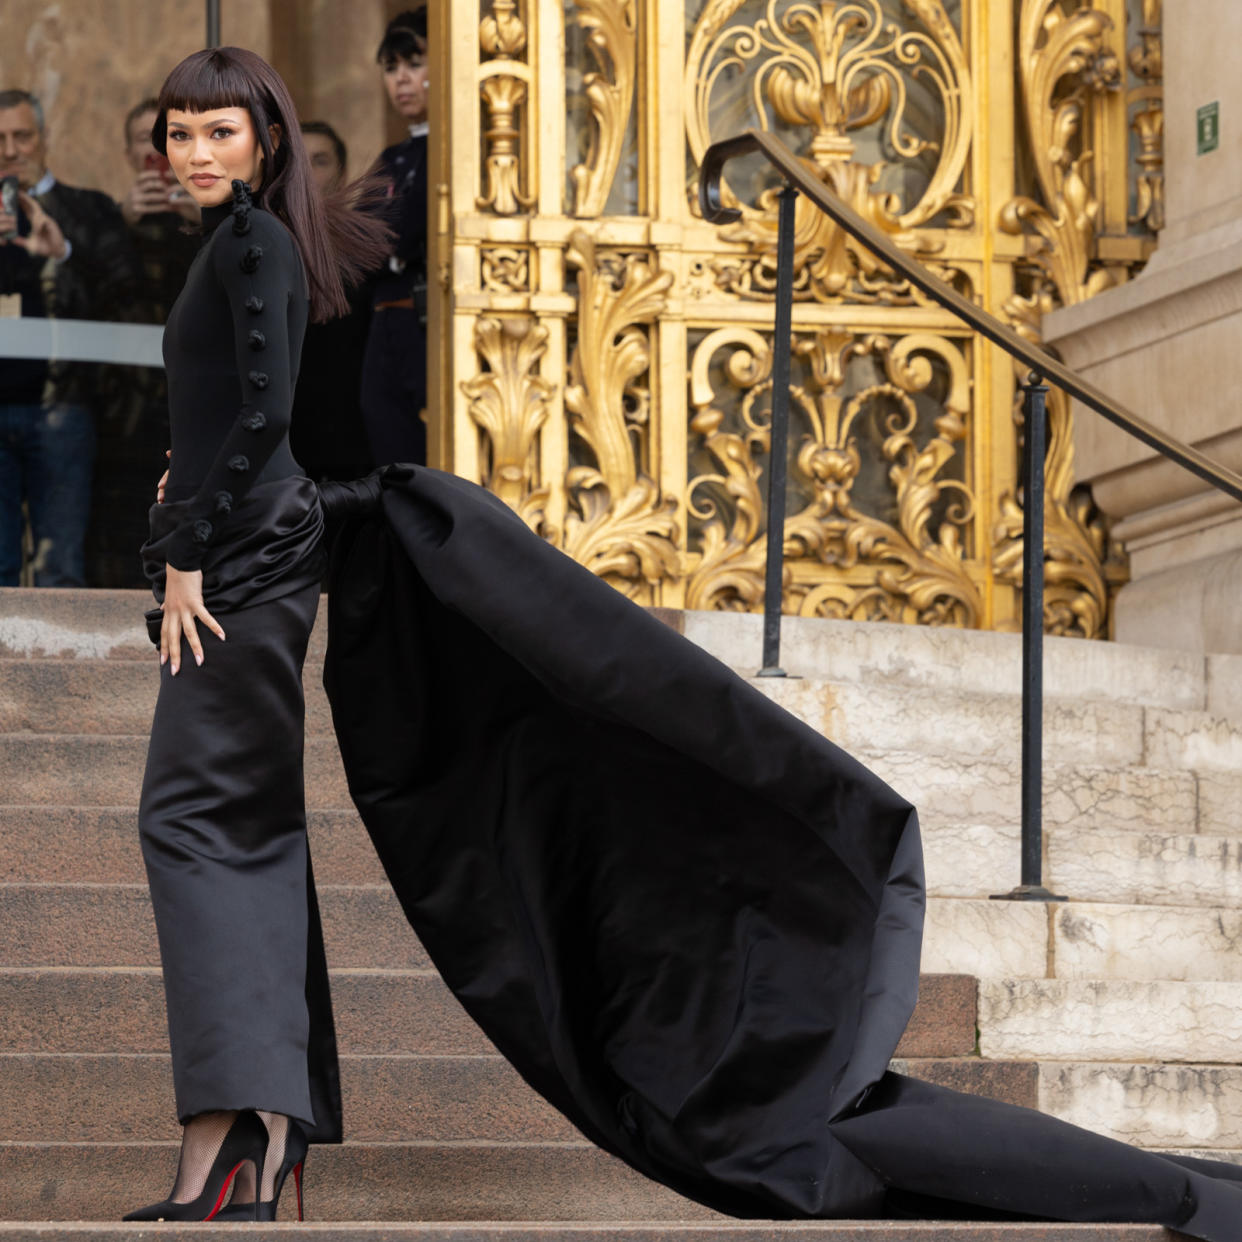  Zendaya wearing a long sleeve black dress with a long train to Schiaparelli Haute Couture show in Paris. 